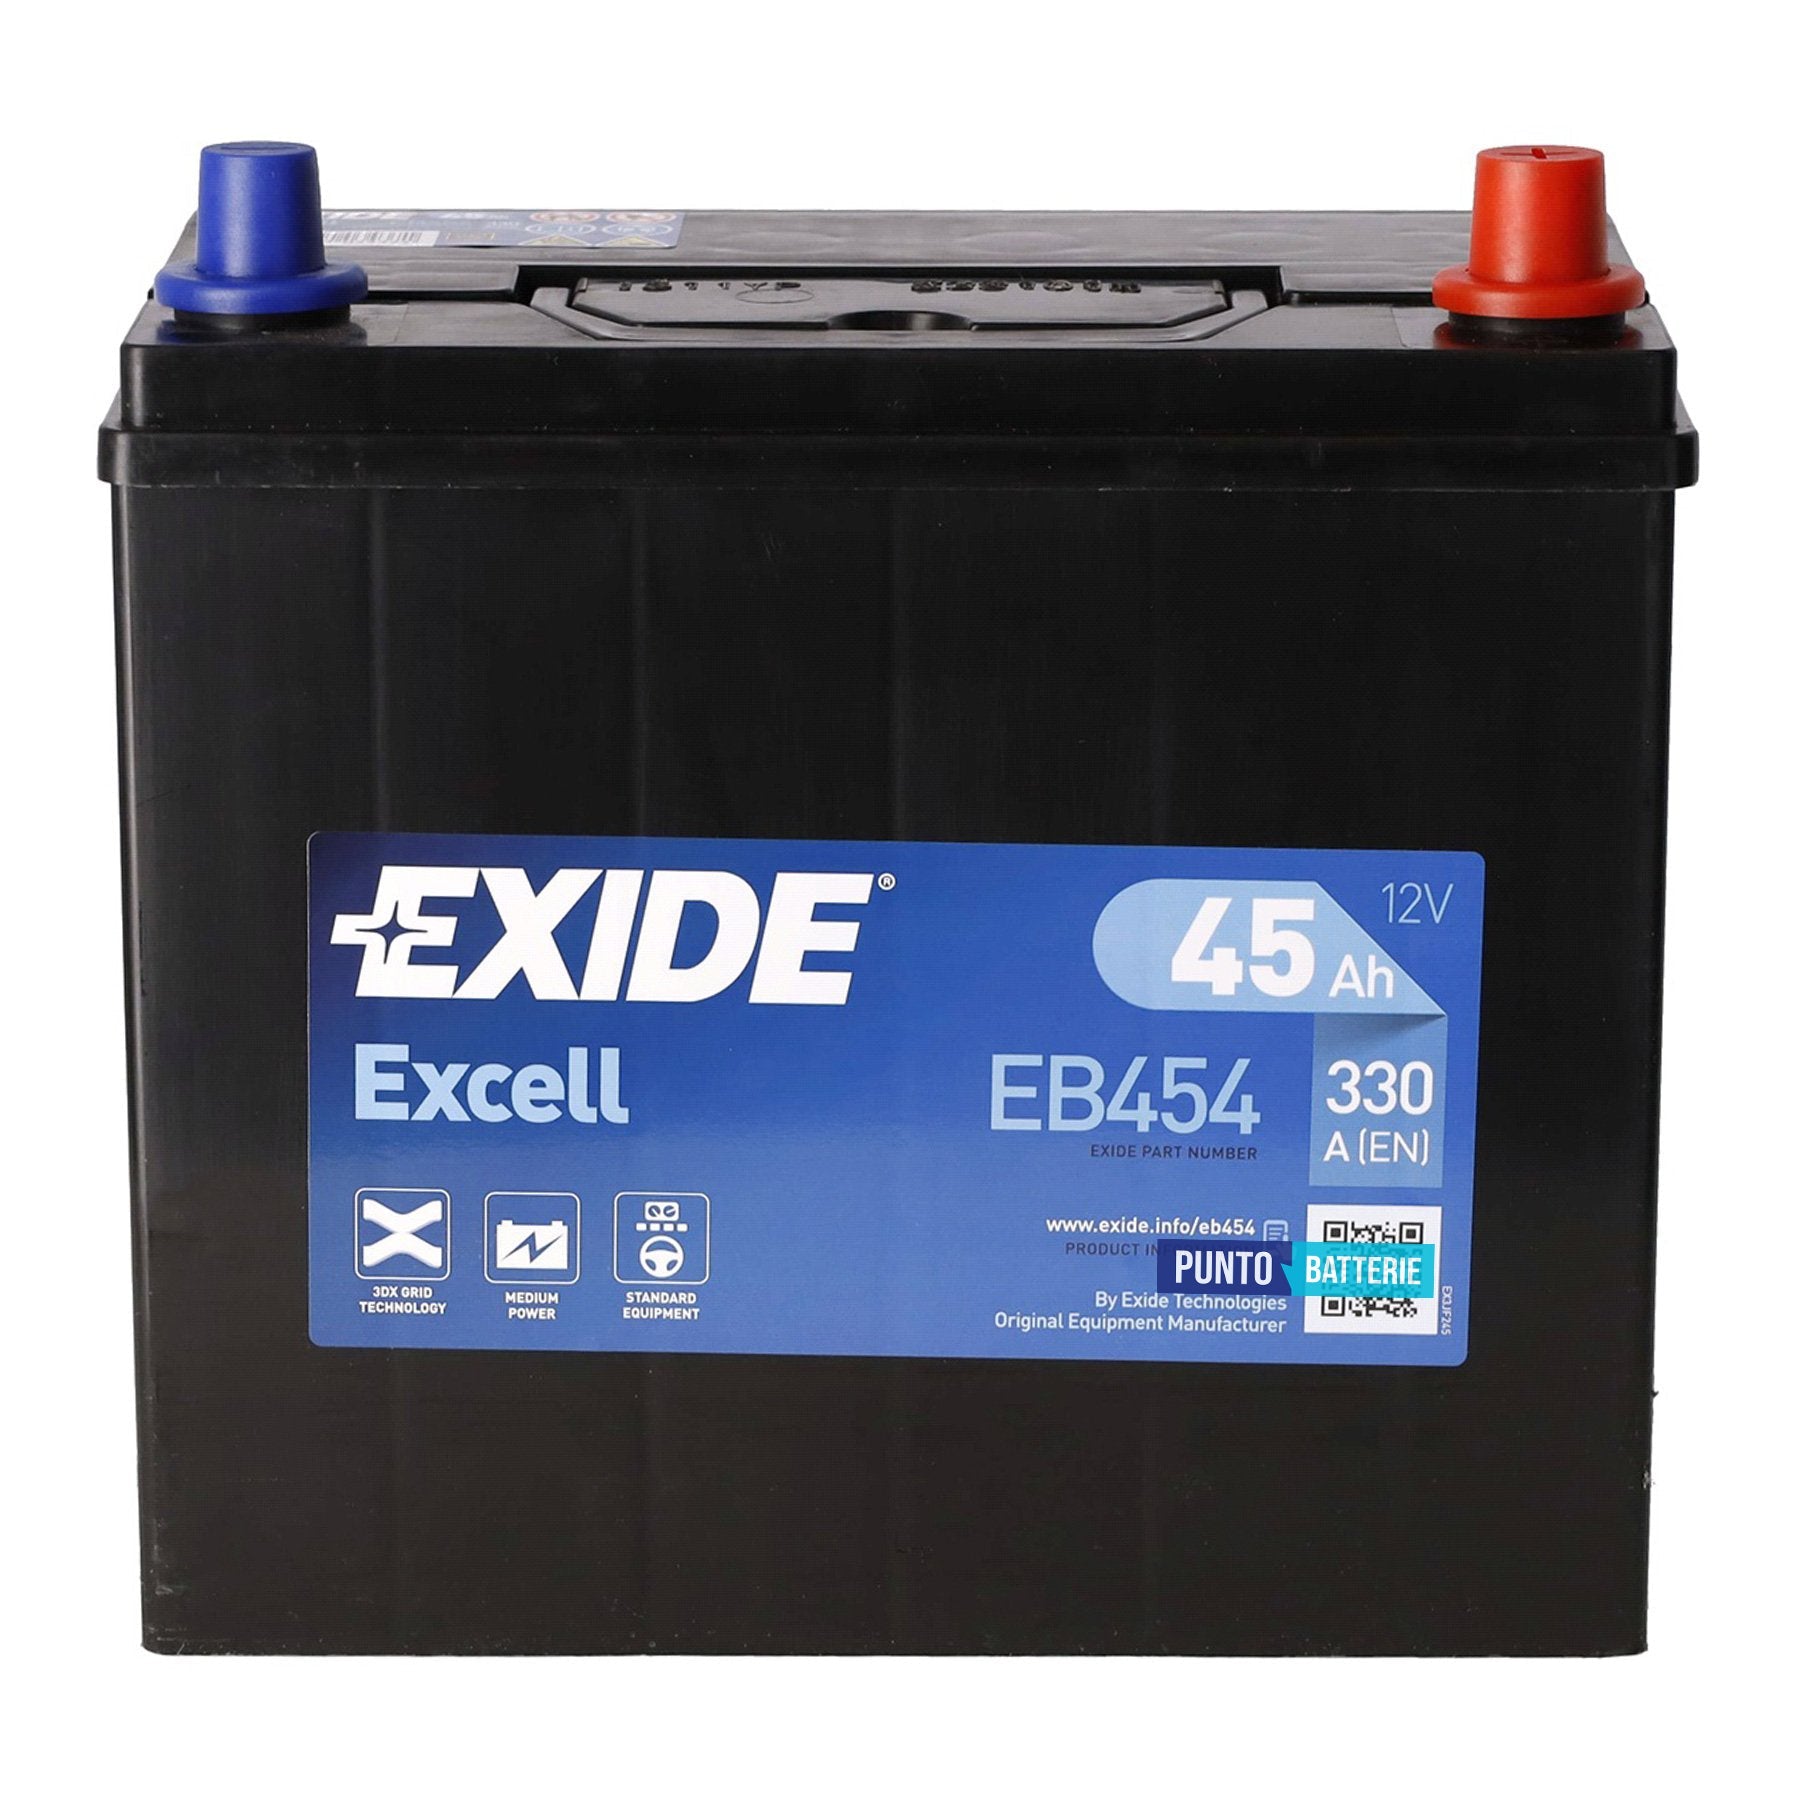 Batteria Exide 45Ah, 12V, 330A, 237x127x227mm